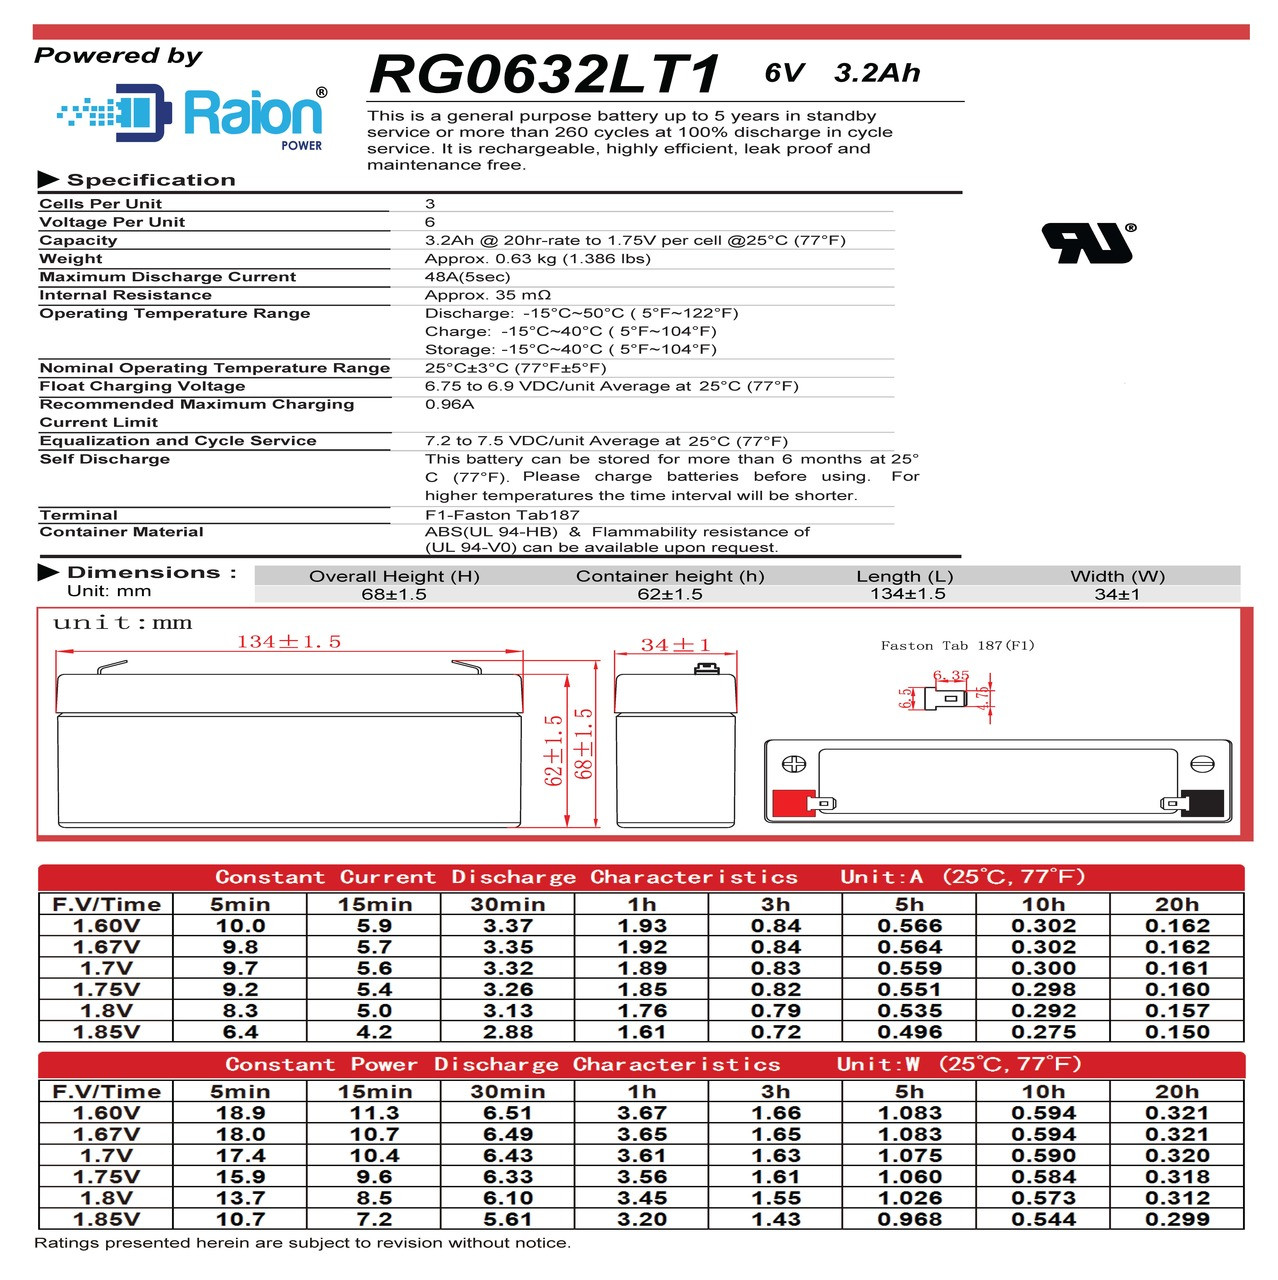 Raion Power RG0632LT1 6V 3.2Ah Battery Data Sheet for Health o meter 452KL Scale